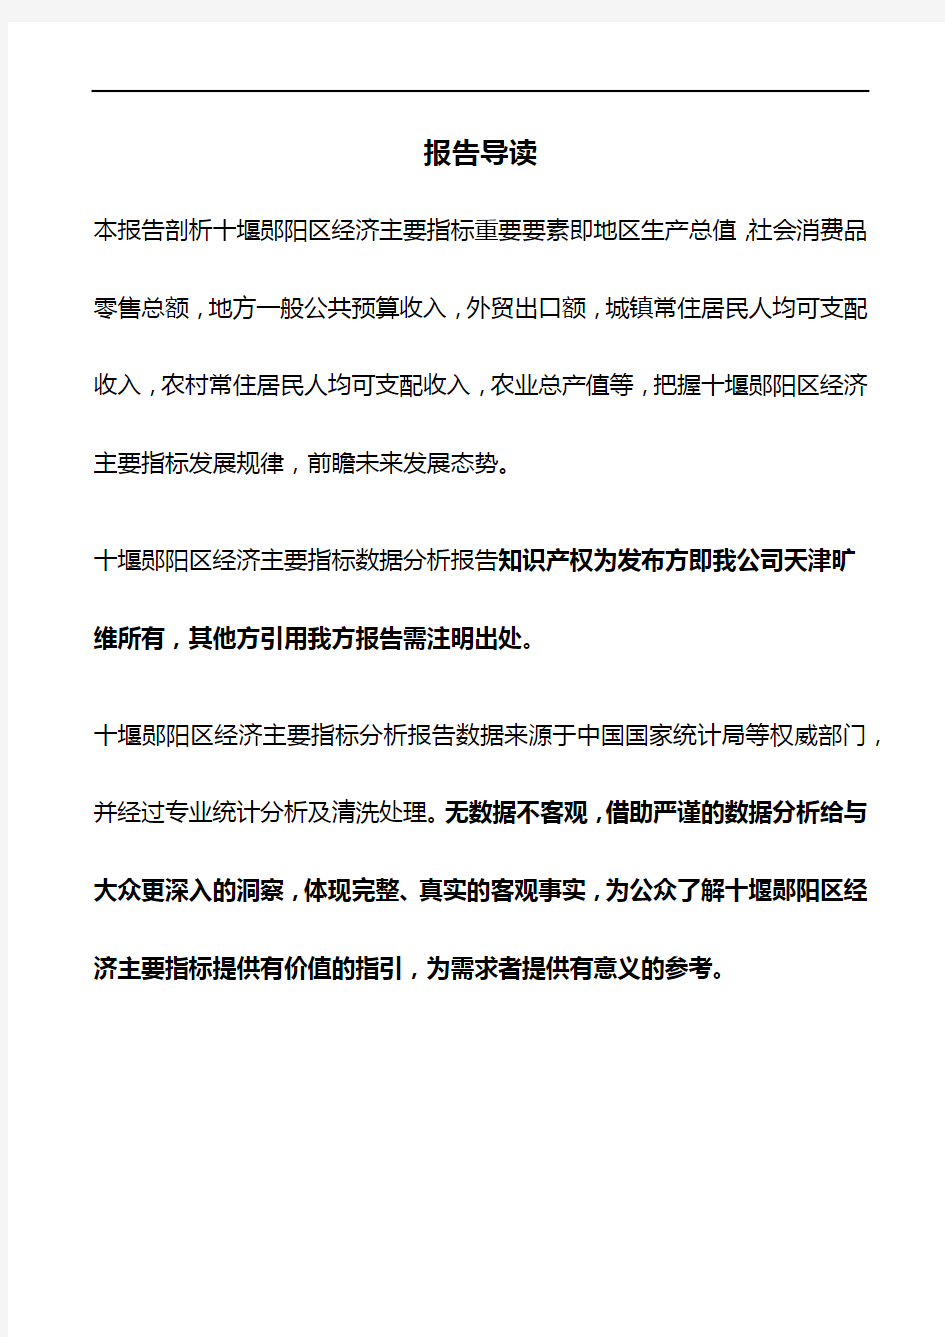 湖北省十堰郧阳区经济主要指标3年数据分析报告2020版